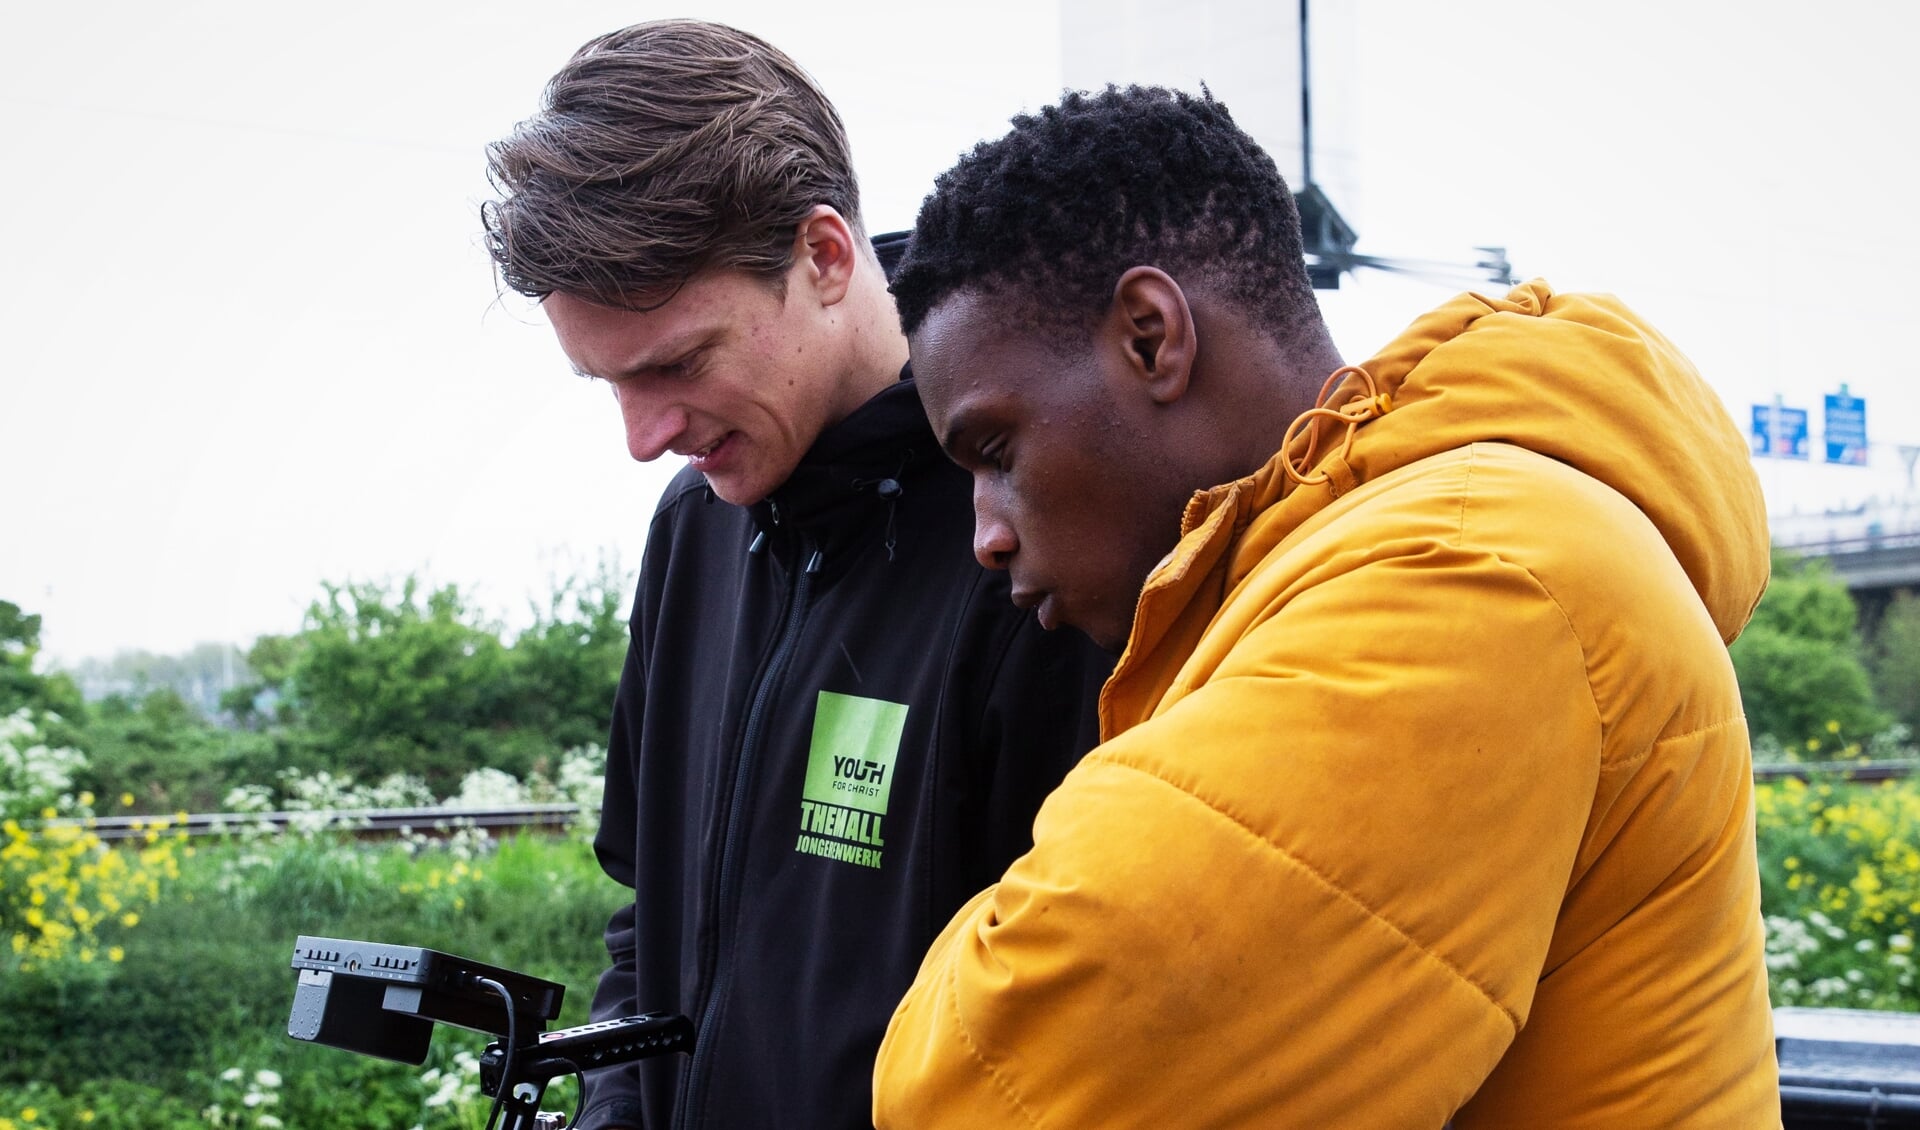 Jongerenwerker en videograaf Casper van Sligtenhorst en Jack Bunga tijdens de opnames van de videoclip ‘Ik hou het 100’.